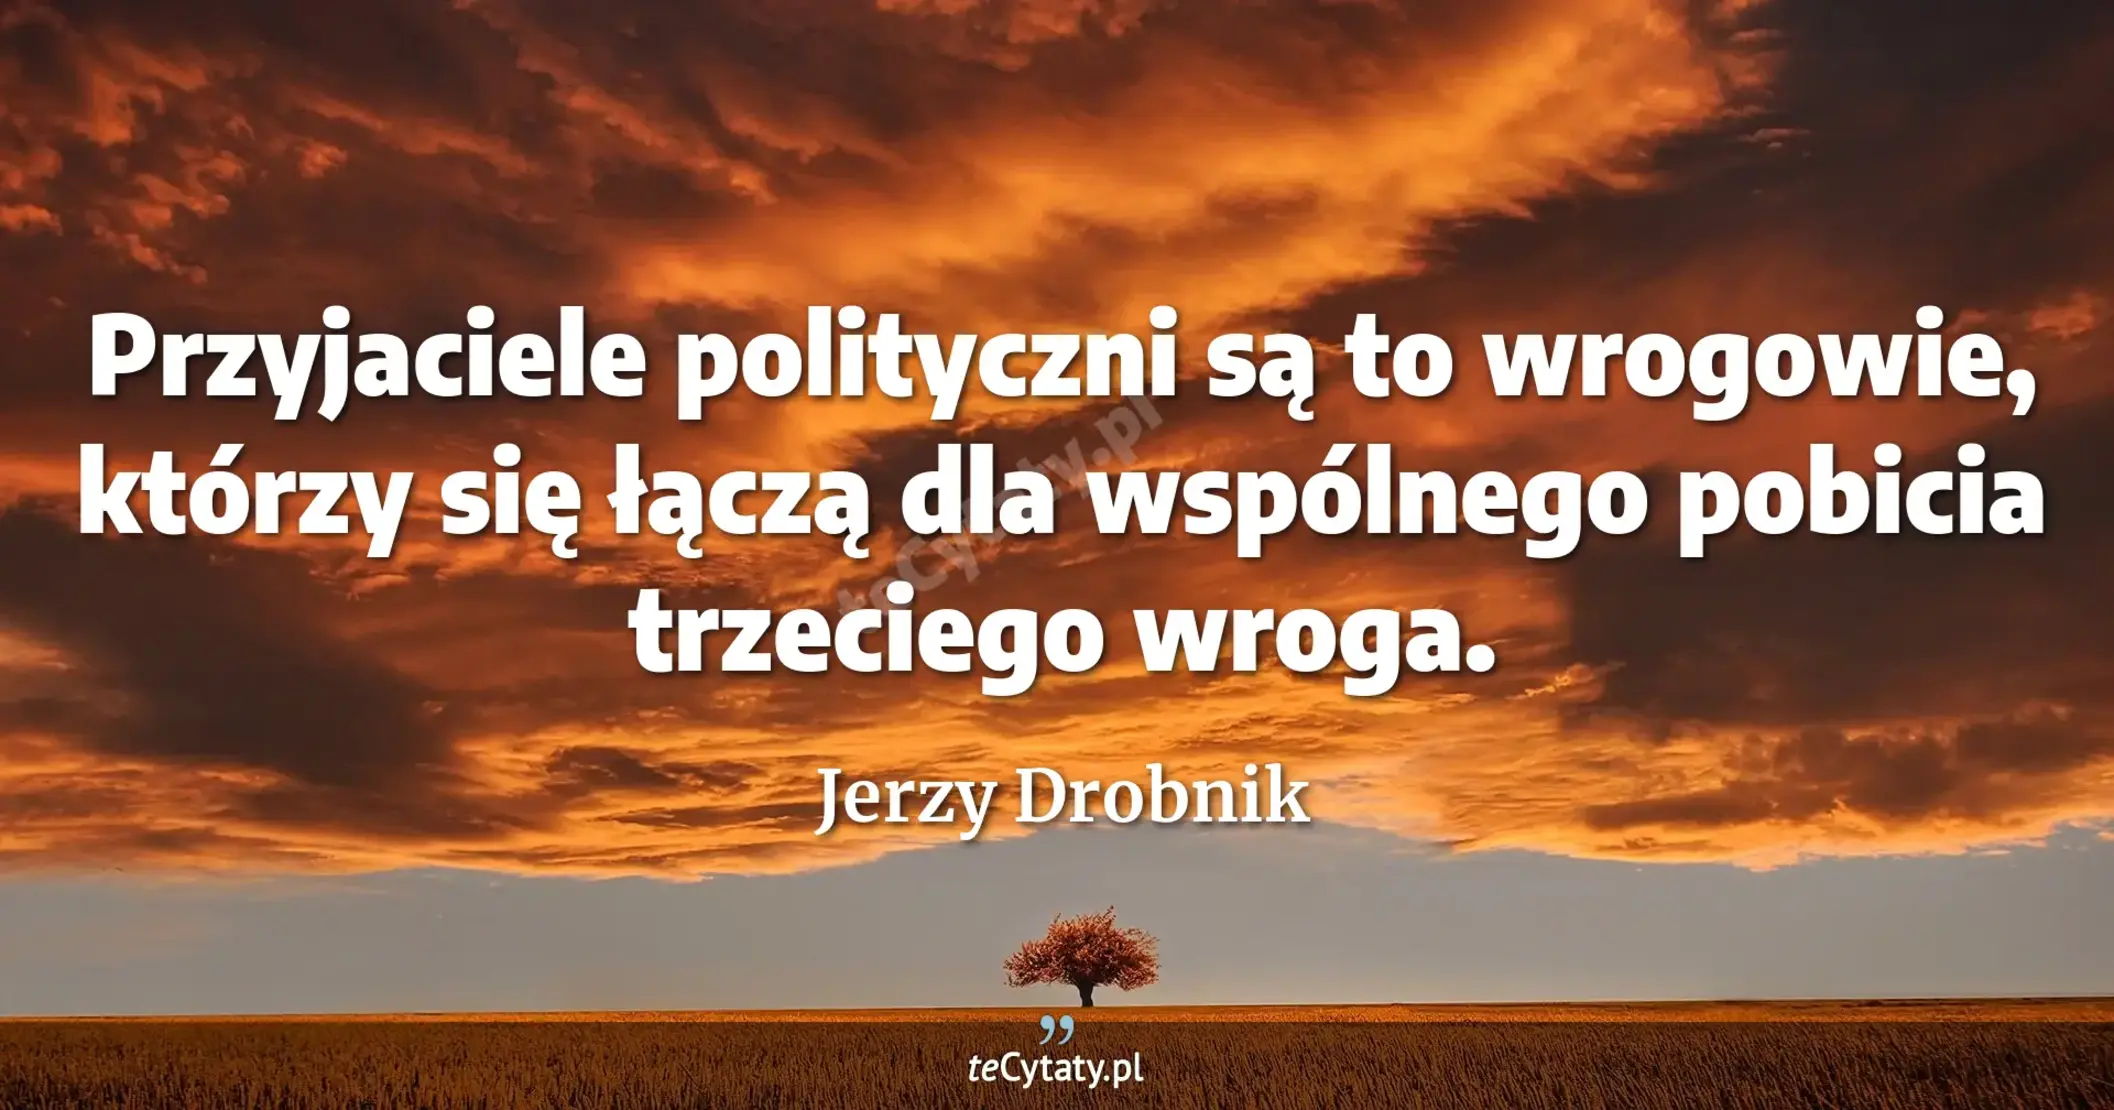 Przyjaciele polityczni są to wrogowie, którzy się łączą dla wspólnego pobicia trzeciego wroga. - Jerzy Drobnik